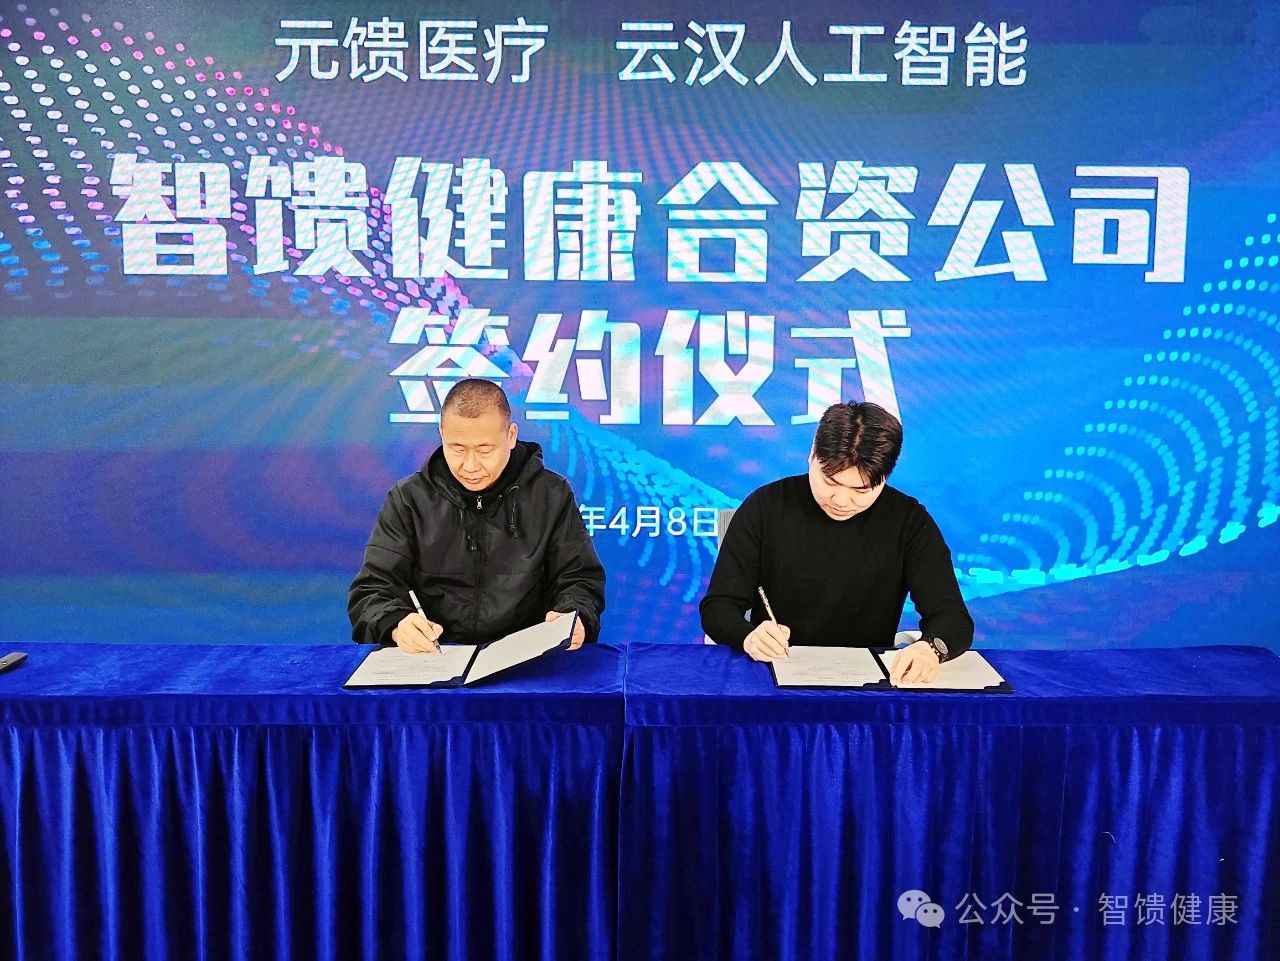 4月8日，云汉人工智能与元馈医疗科技签订了战略合作协议，双方各自投入最核心的资源与技术，共同成立“智馈健康科技”公司